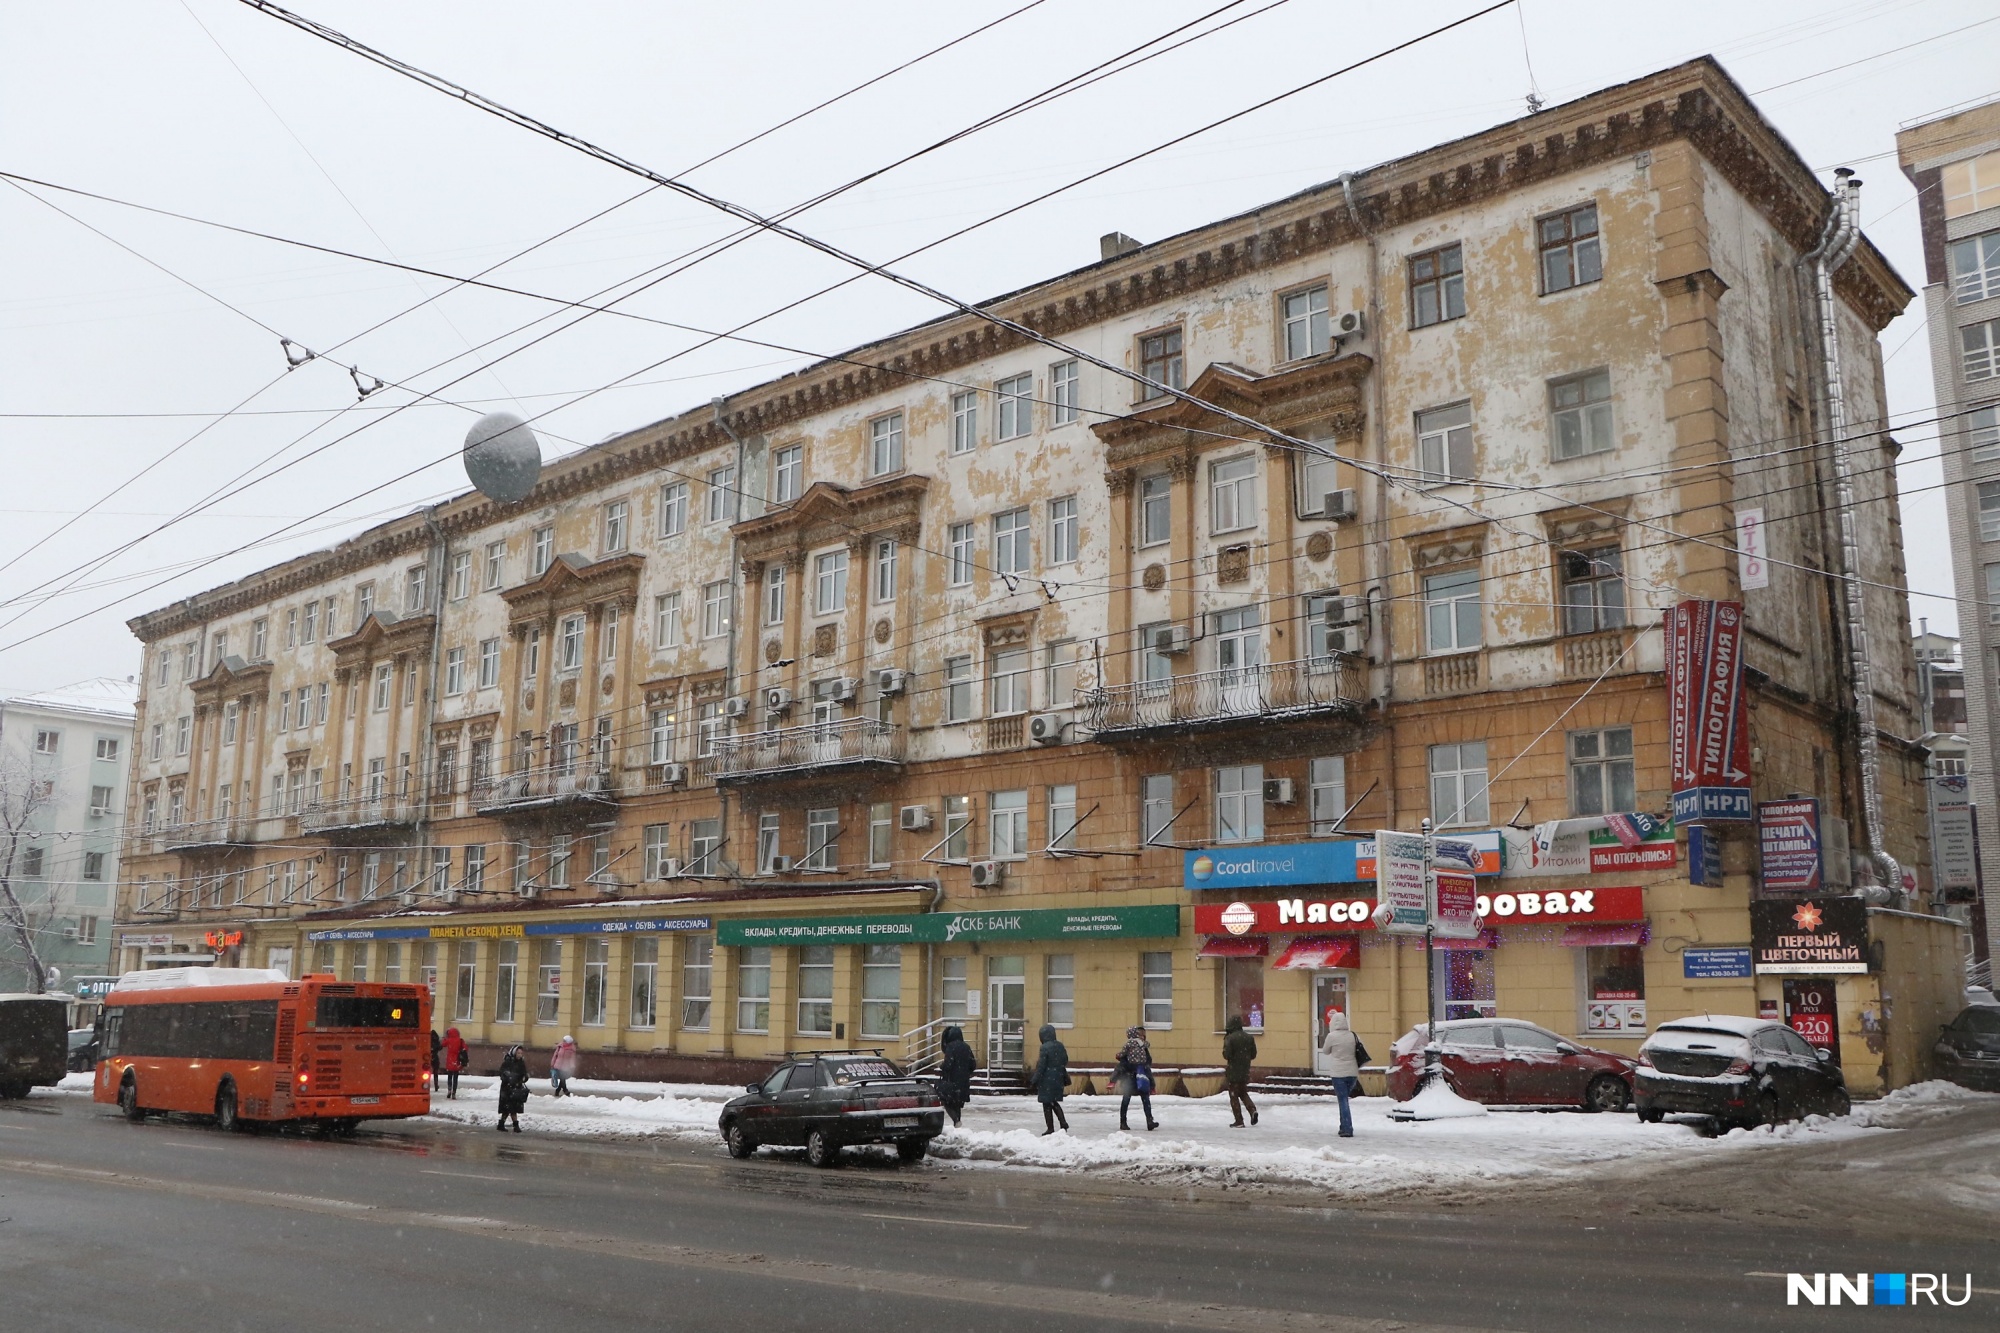 Последний офис приема Кадастровой палаты закрылся в Нижнем Новгороде